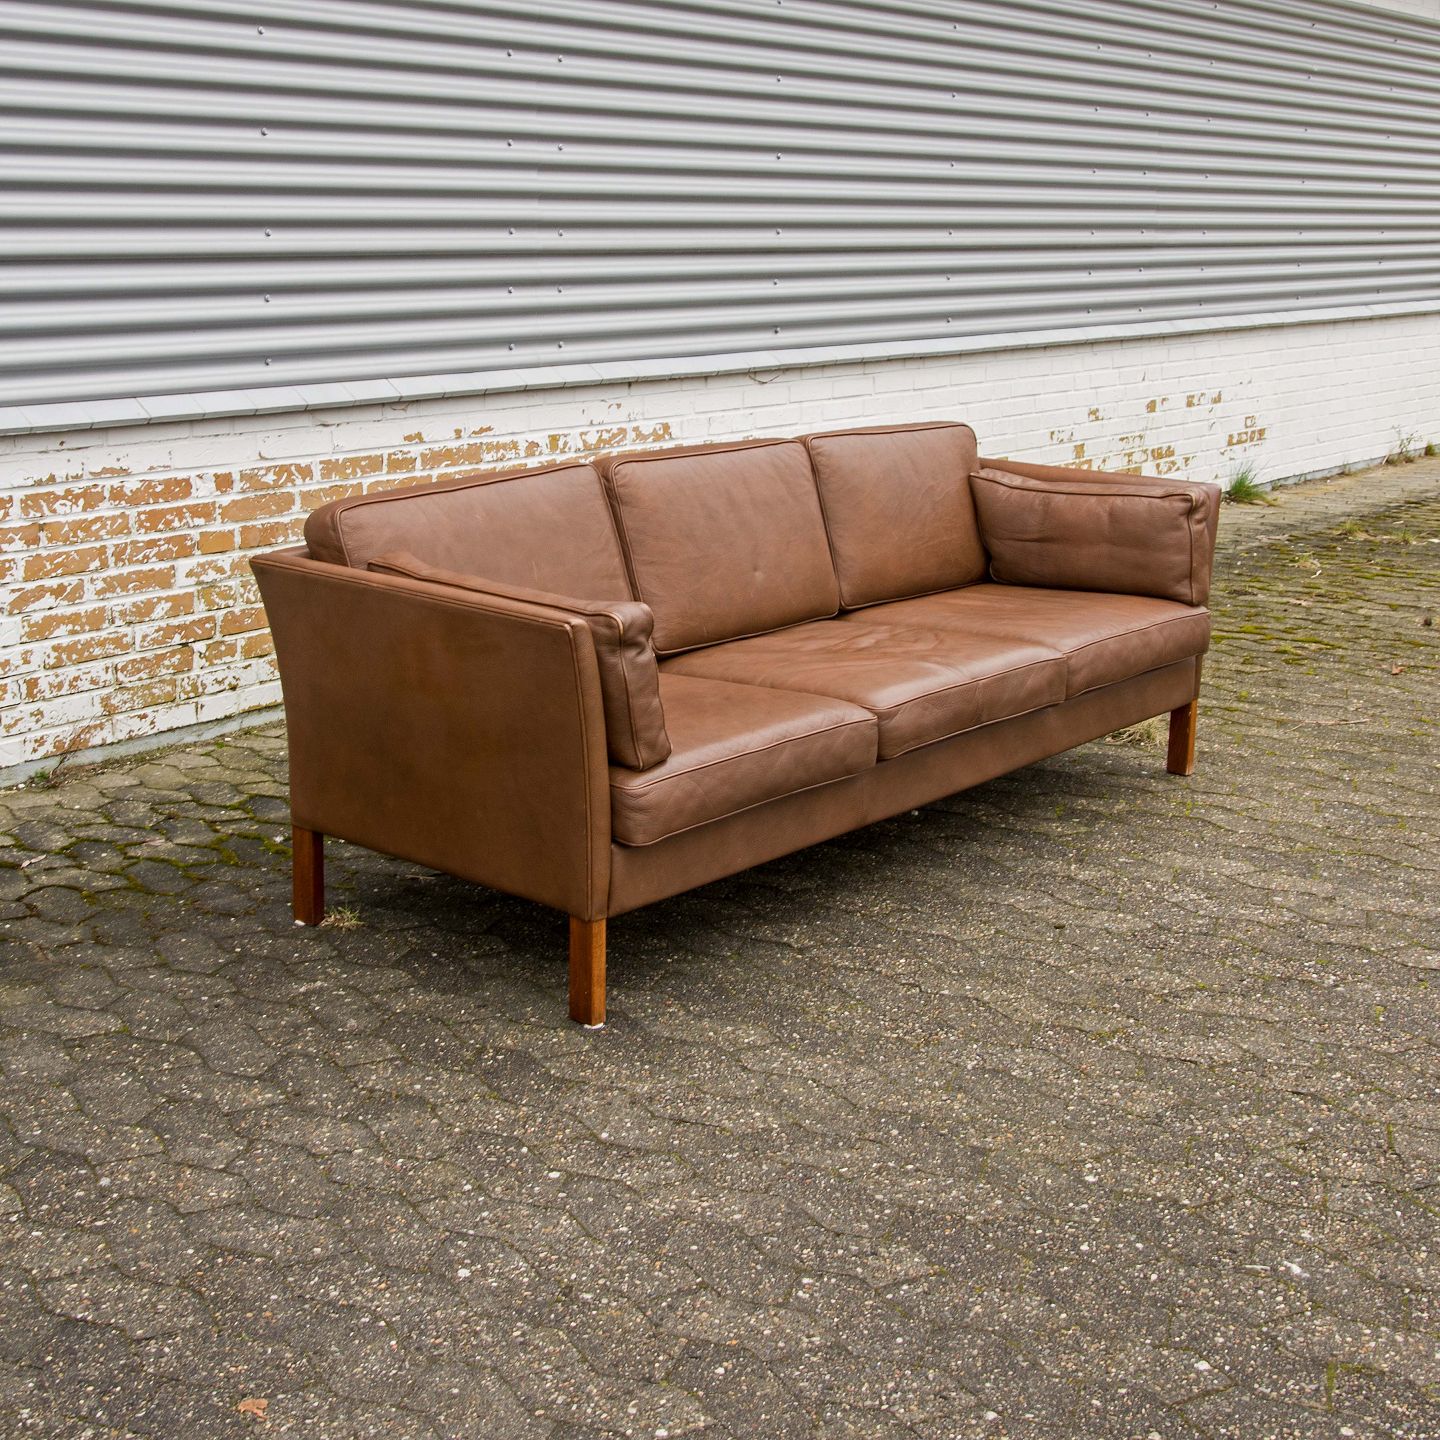 Når som helst Bliv forvirret shuffle www.Antikvitet.net - Læder sofa Mogens Hansen design